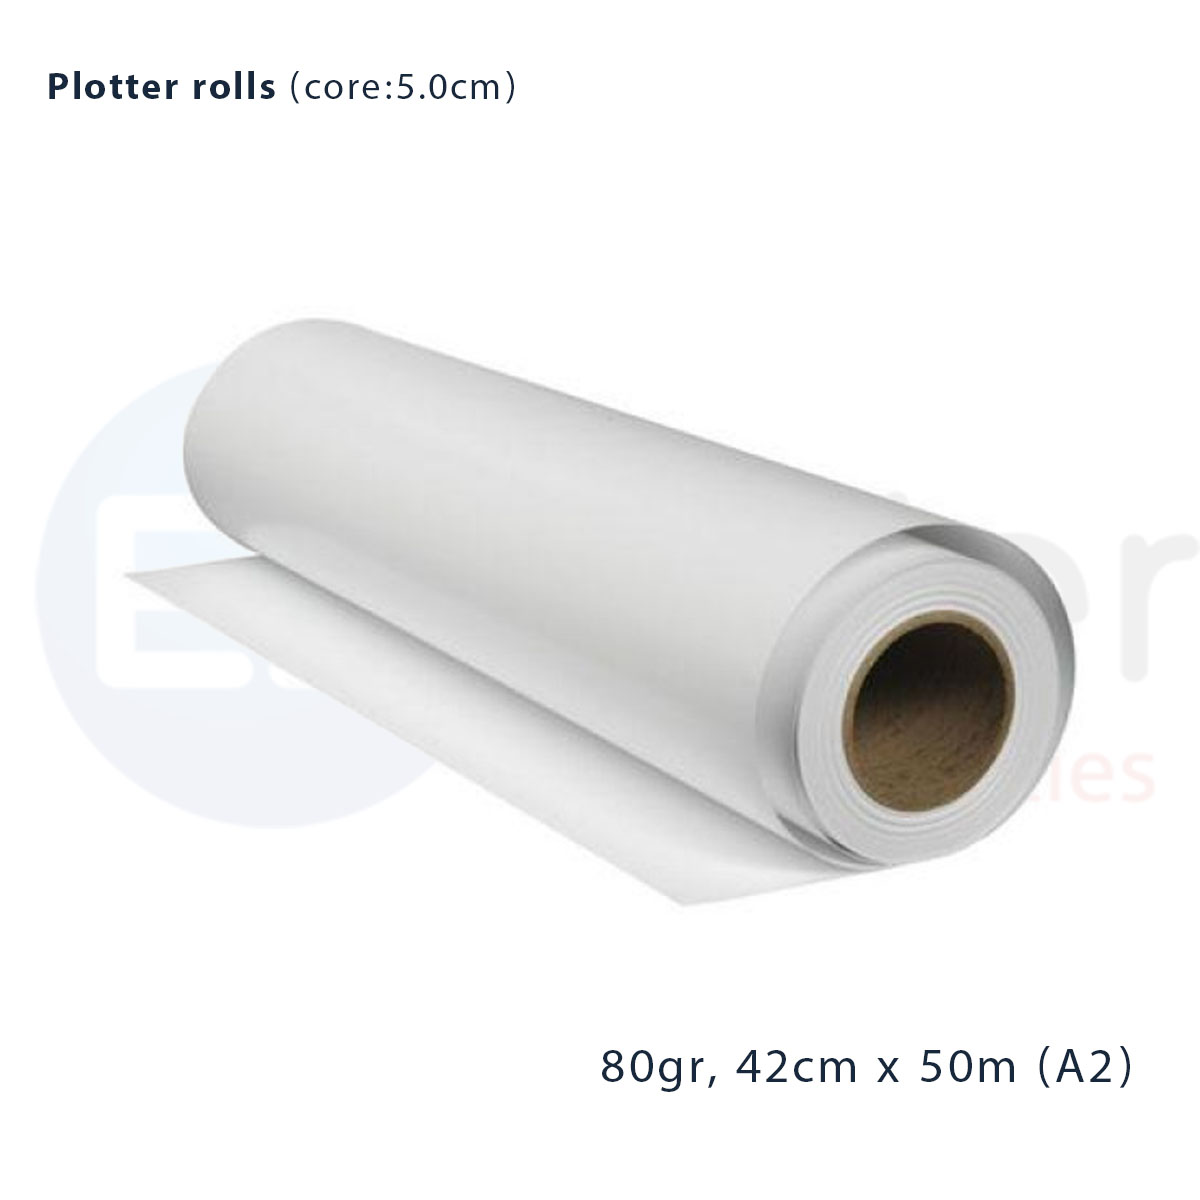 Plotter roll A2, 5cm core, 42cmx50m, 80gr